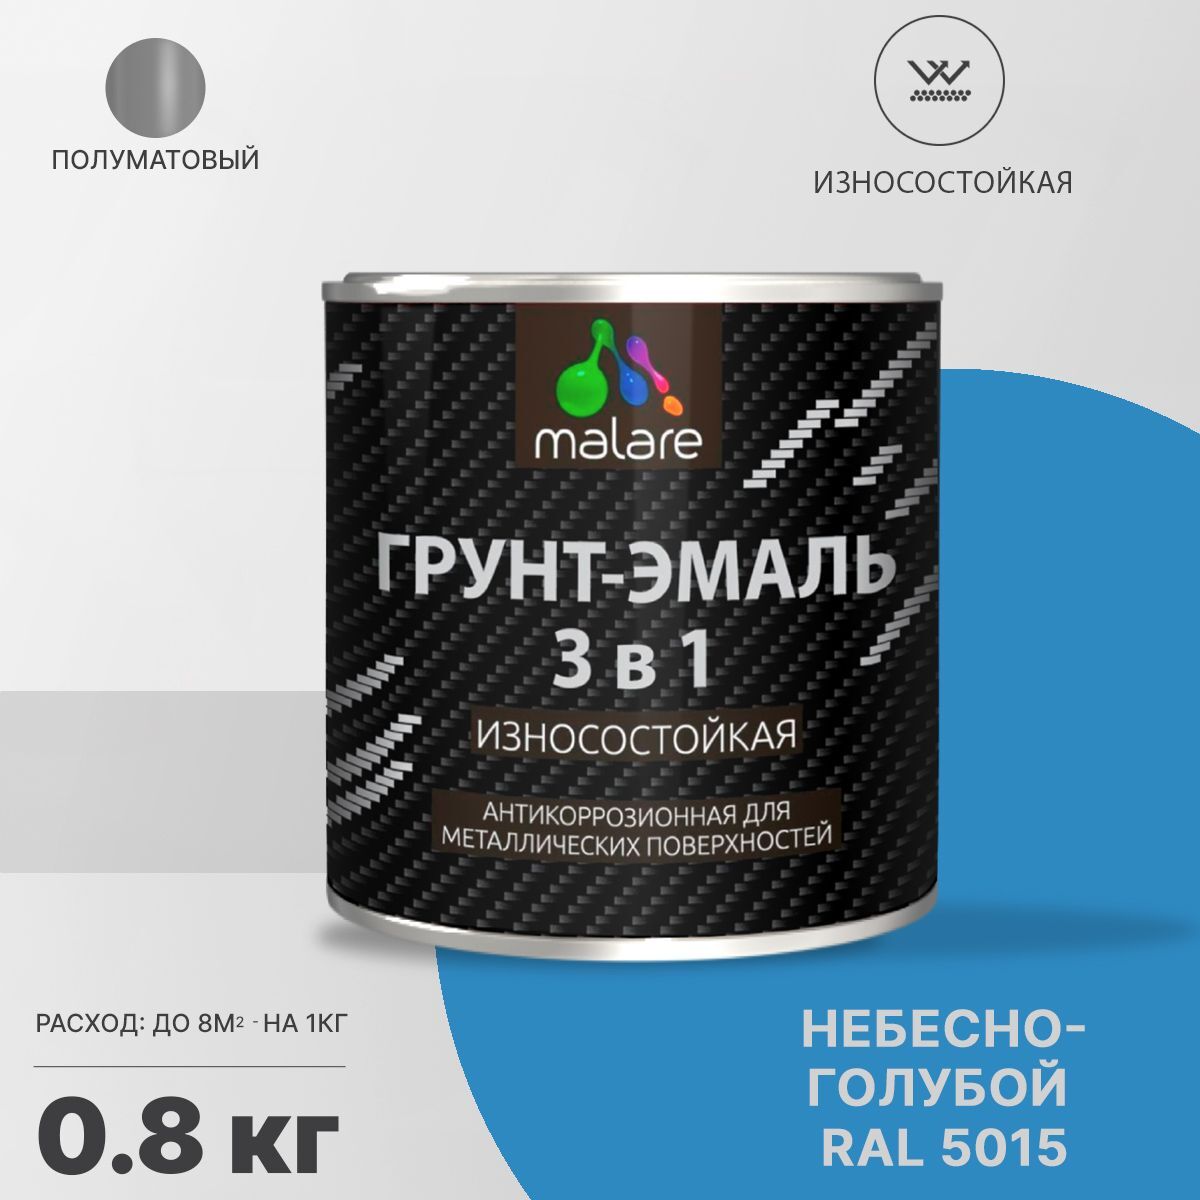 Грунт-эмаль 3 в 1 Malare StrongCorr антикоррозионная износостойкая, Алкидно-уретановая, RAL 5015, 0,8 кг